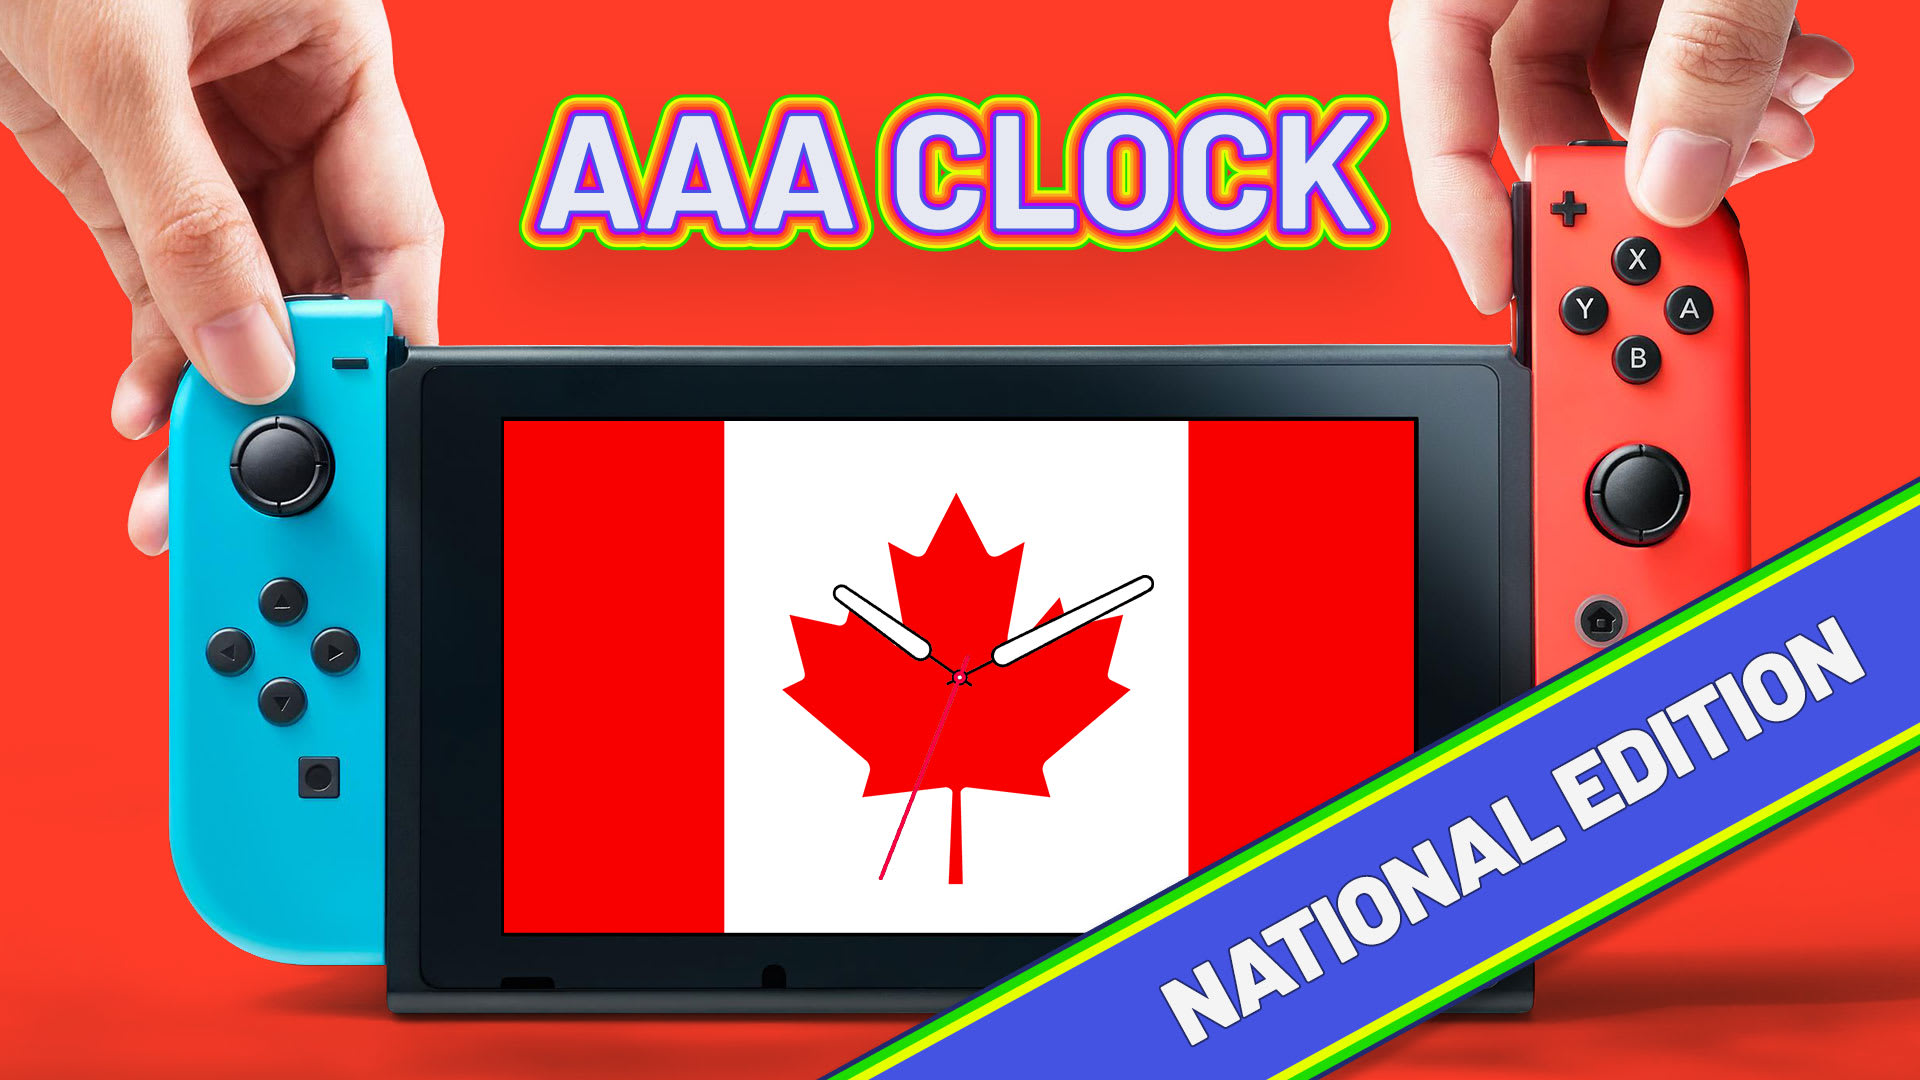 AAA Clock National Edition